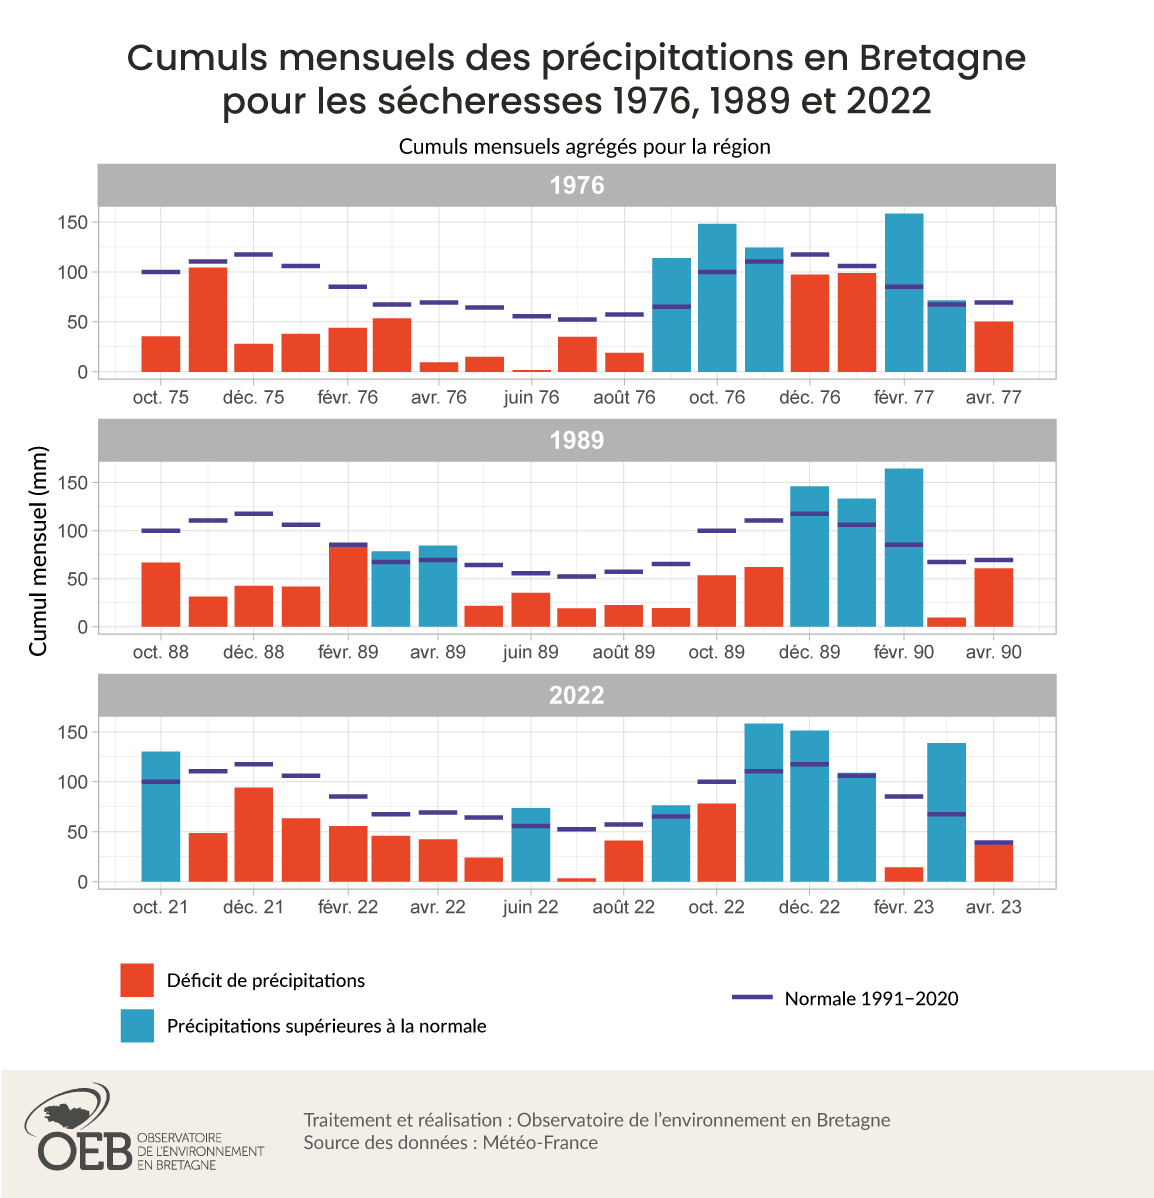 Cumuls mensuels des précipitations en Bretagne pour les sécheresses 1976, 1989 et 2022